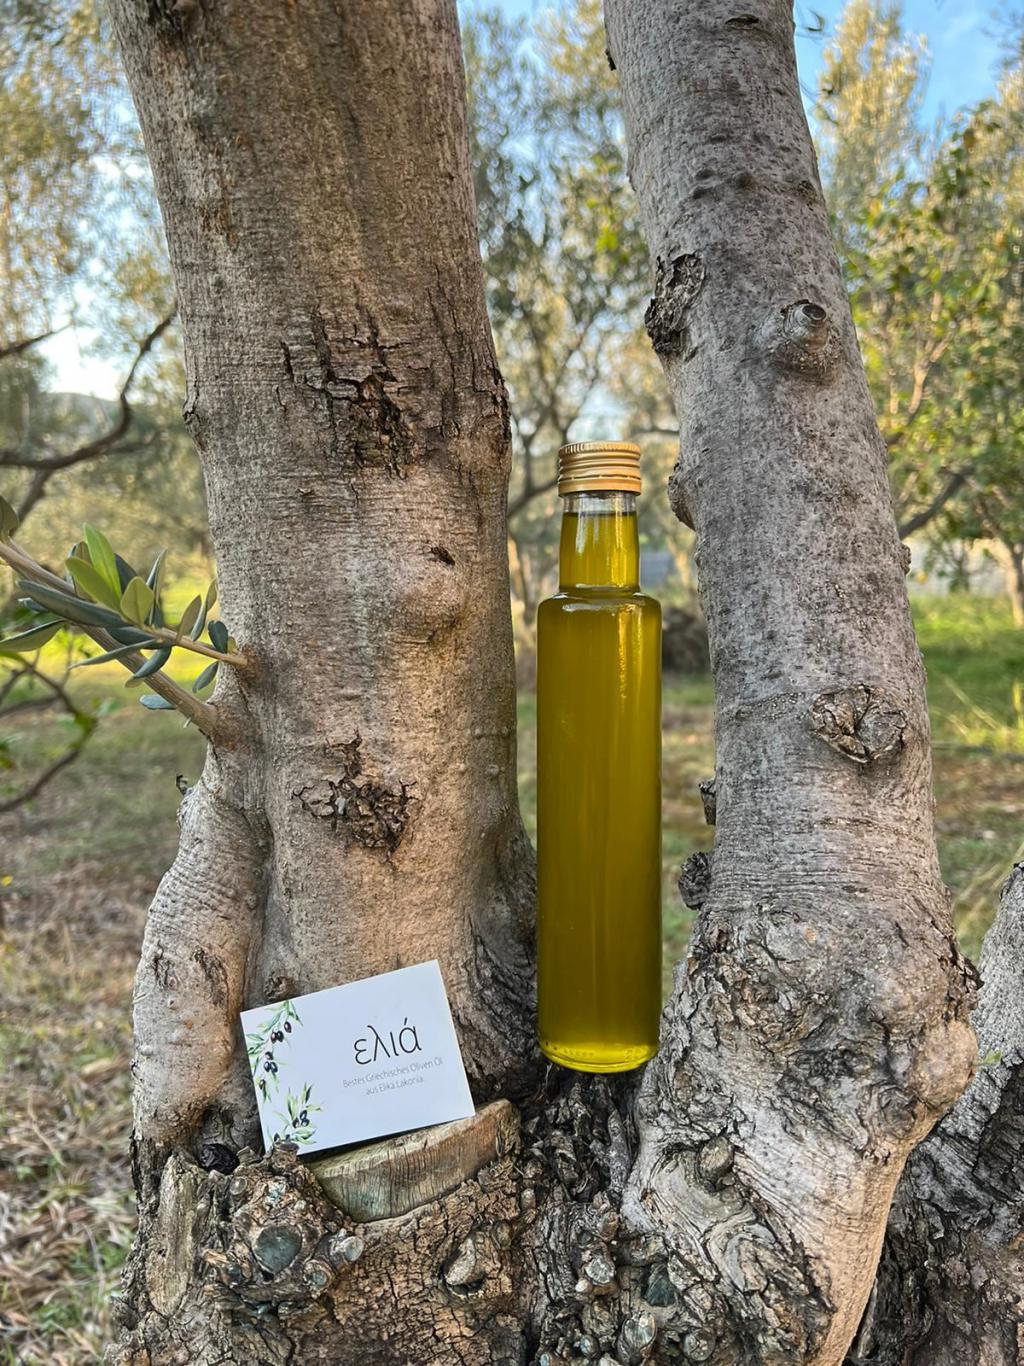 Hier haben wir das Ergebnis der Ölmühle, frisch gepresstes Olivenöl bester Qualität